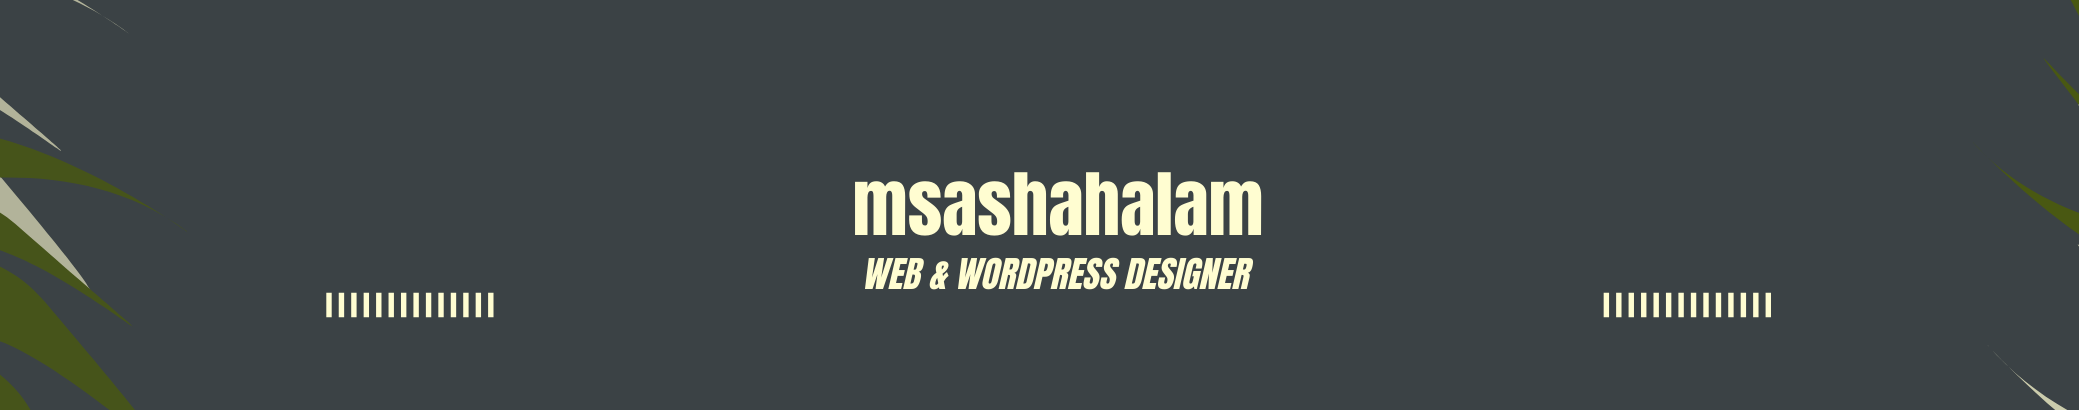 Msa shahalam's profile banner